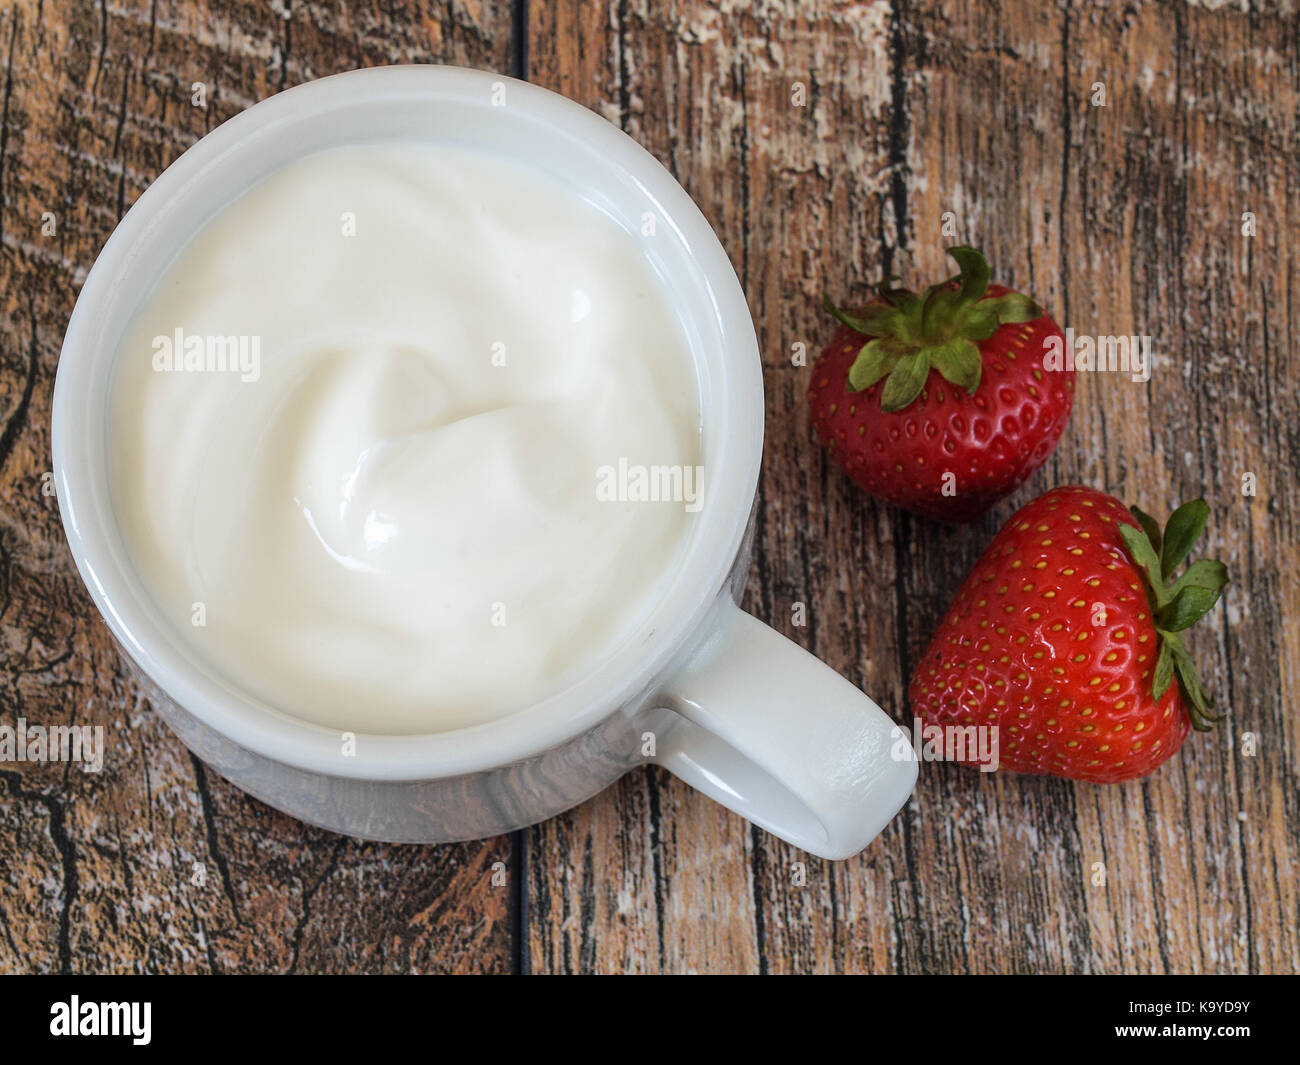 Strawberries yoghurt Stock Photo